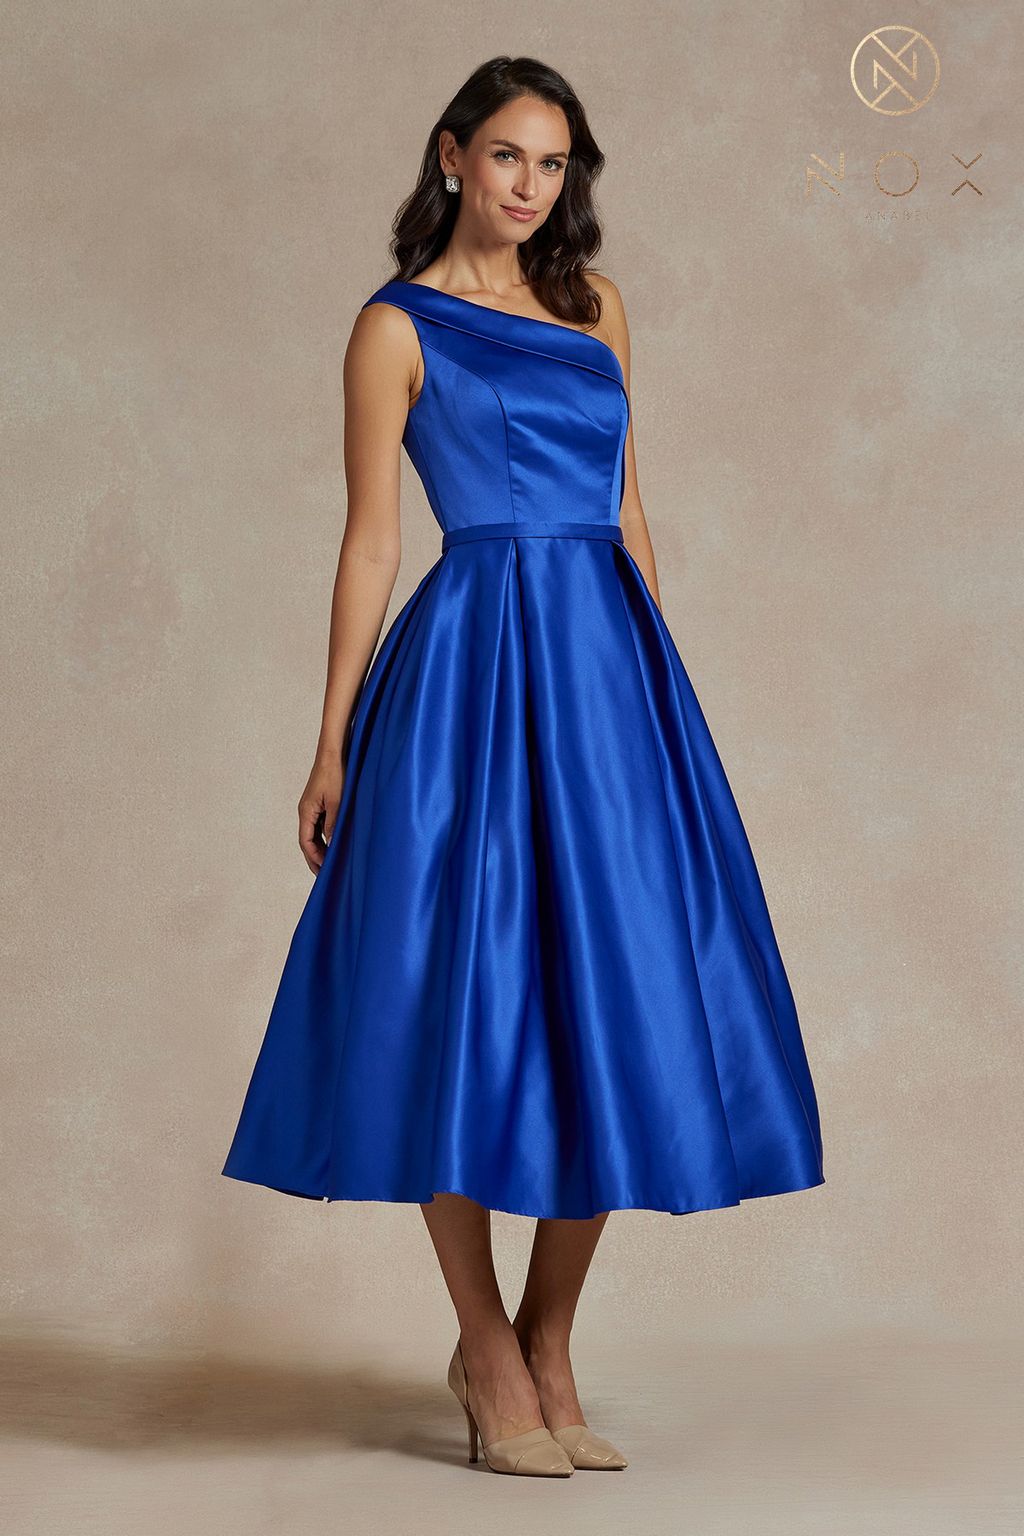 Homecoming Dresses Long One Shoulder Formal Dress Royal Blue